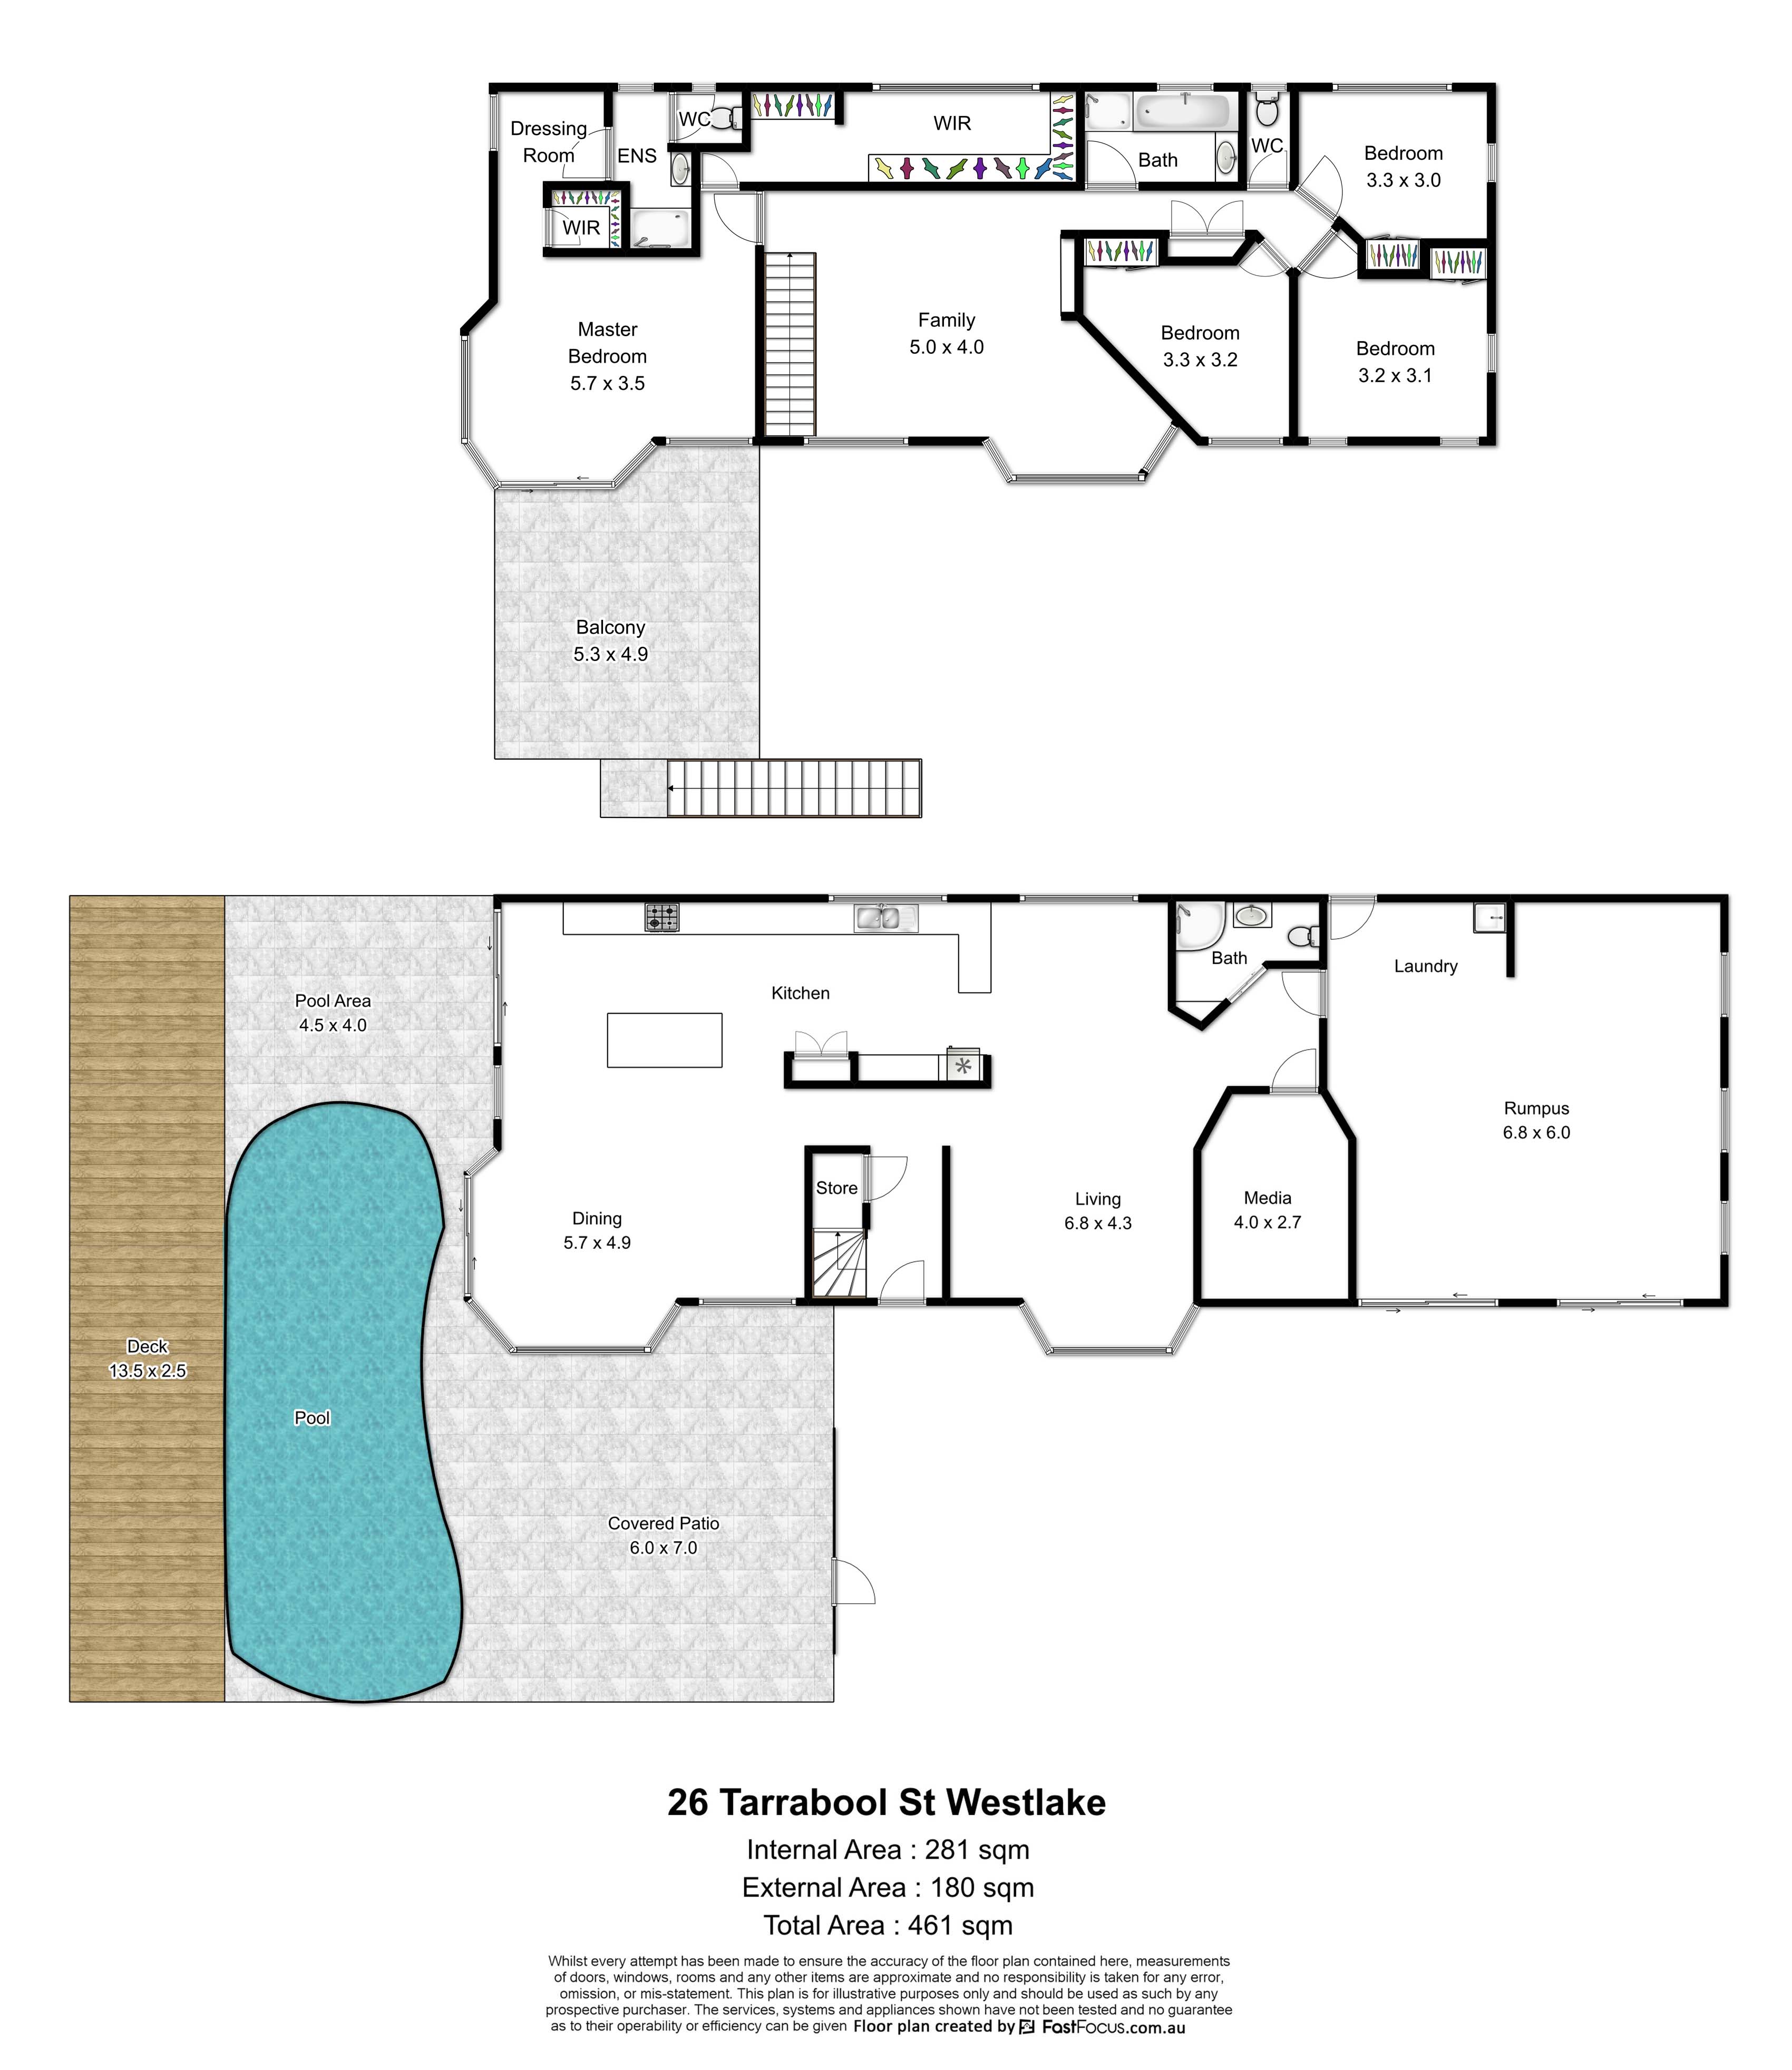 26 Tarrabool St Westlake Floor Plan My Brisbane Home